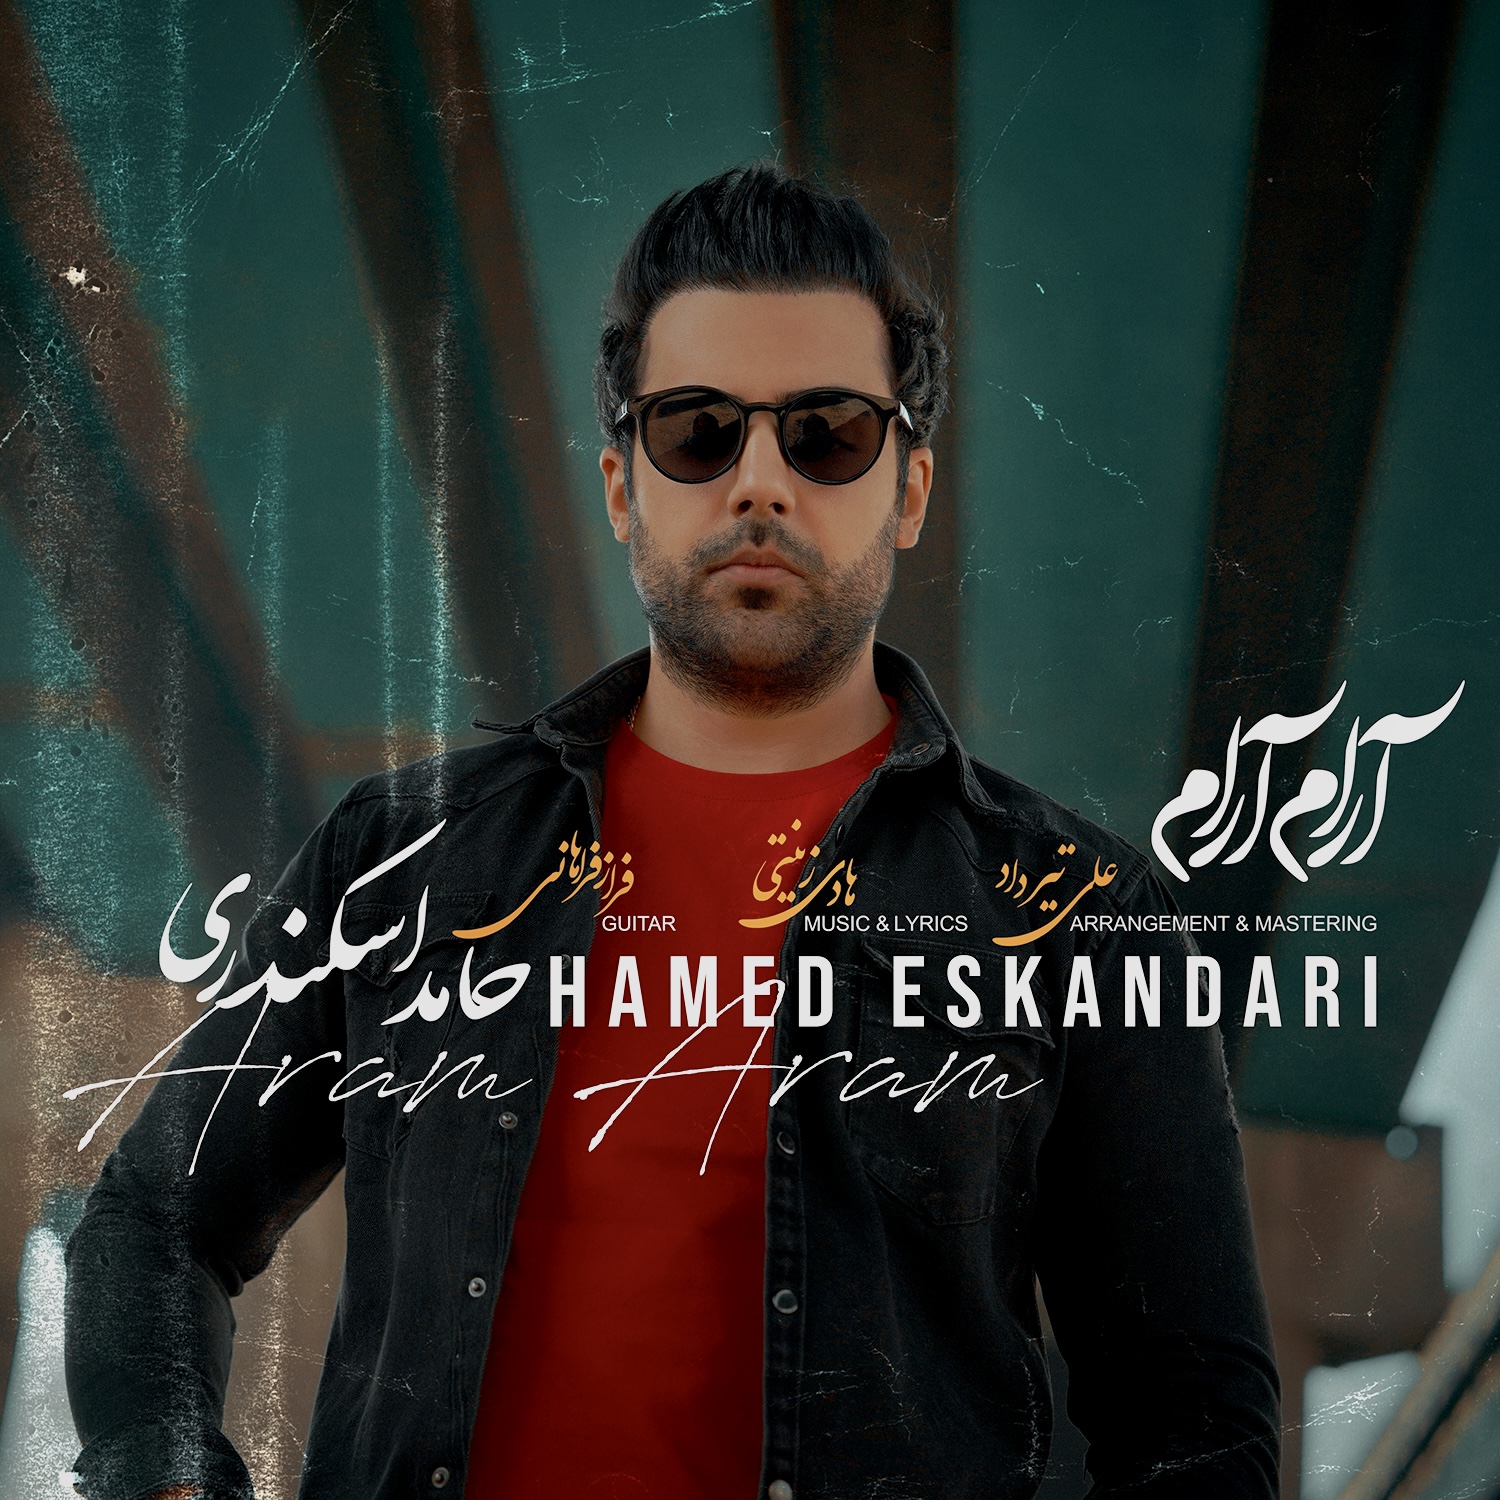  دانلود آهنگ جدید حامد اسکندری - آرام آرام | Download New Music By Hamed Eskandari - Aram Aram